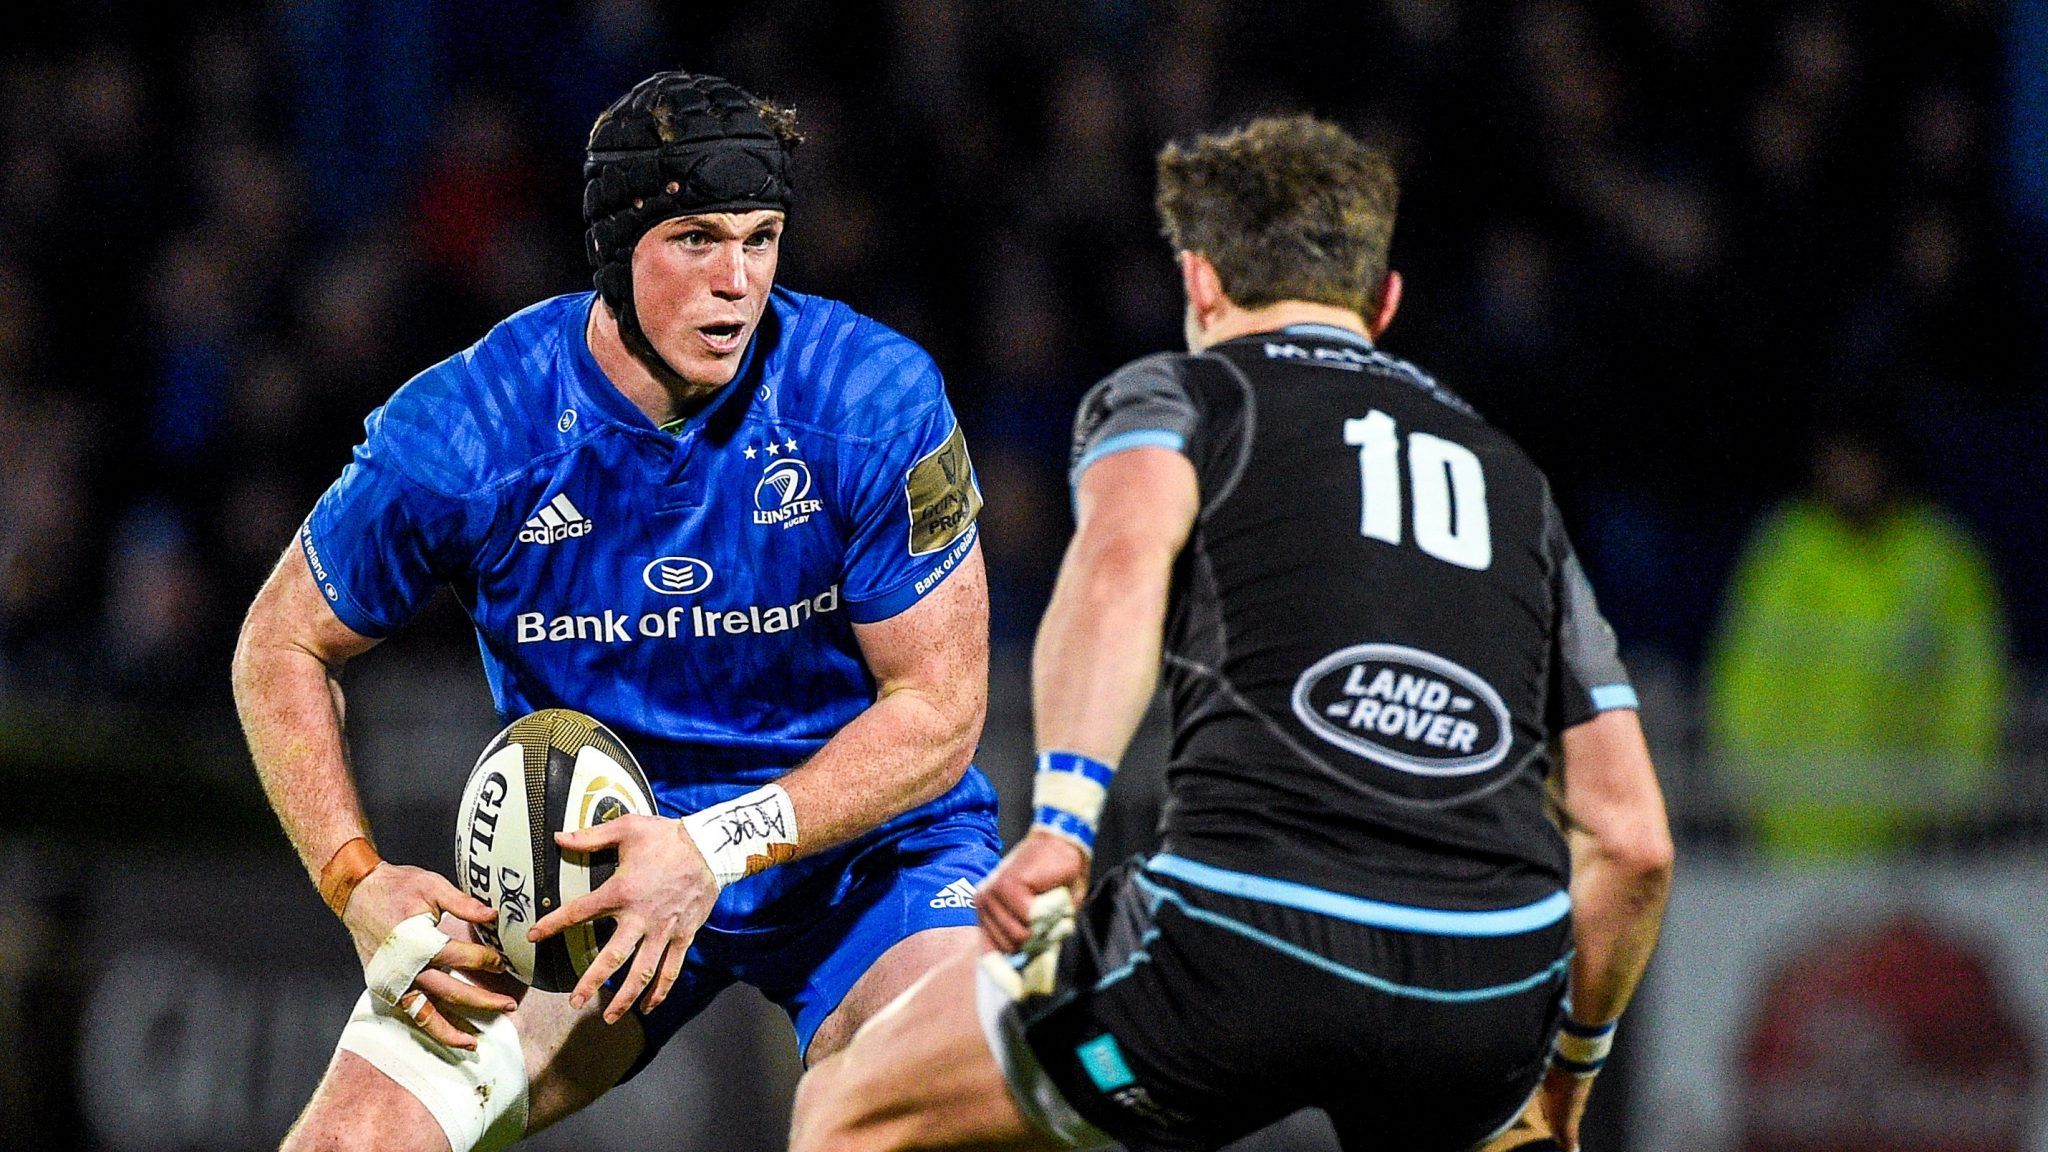 Play him as soon as possible" - Ryan Baird exceeding great expectations |  SportsJOE.ie